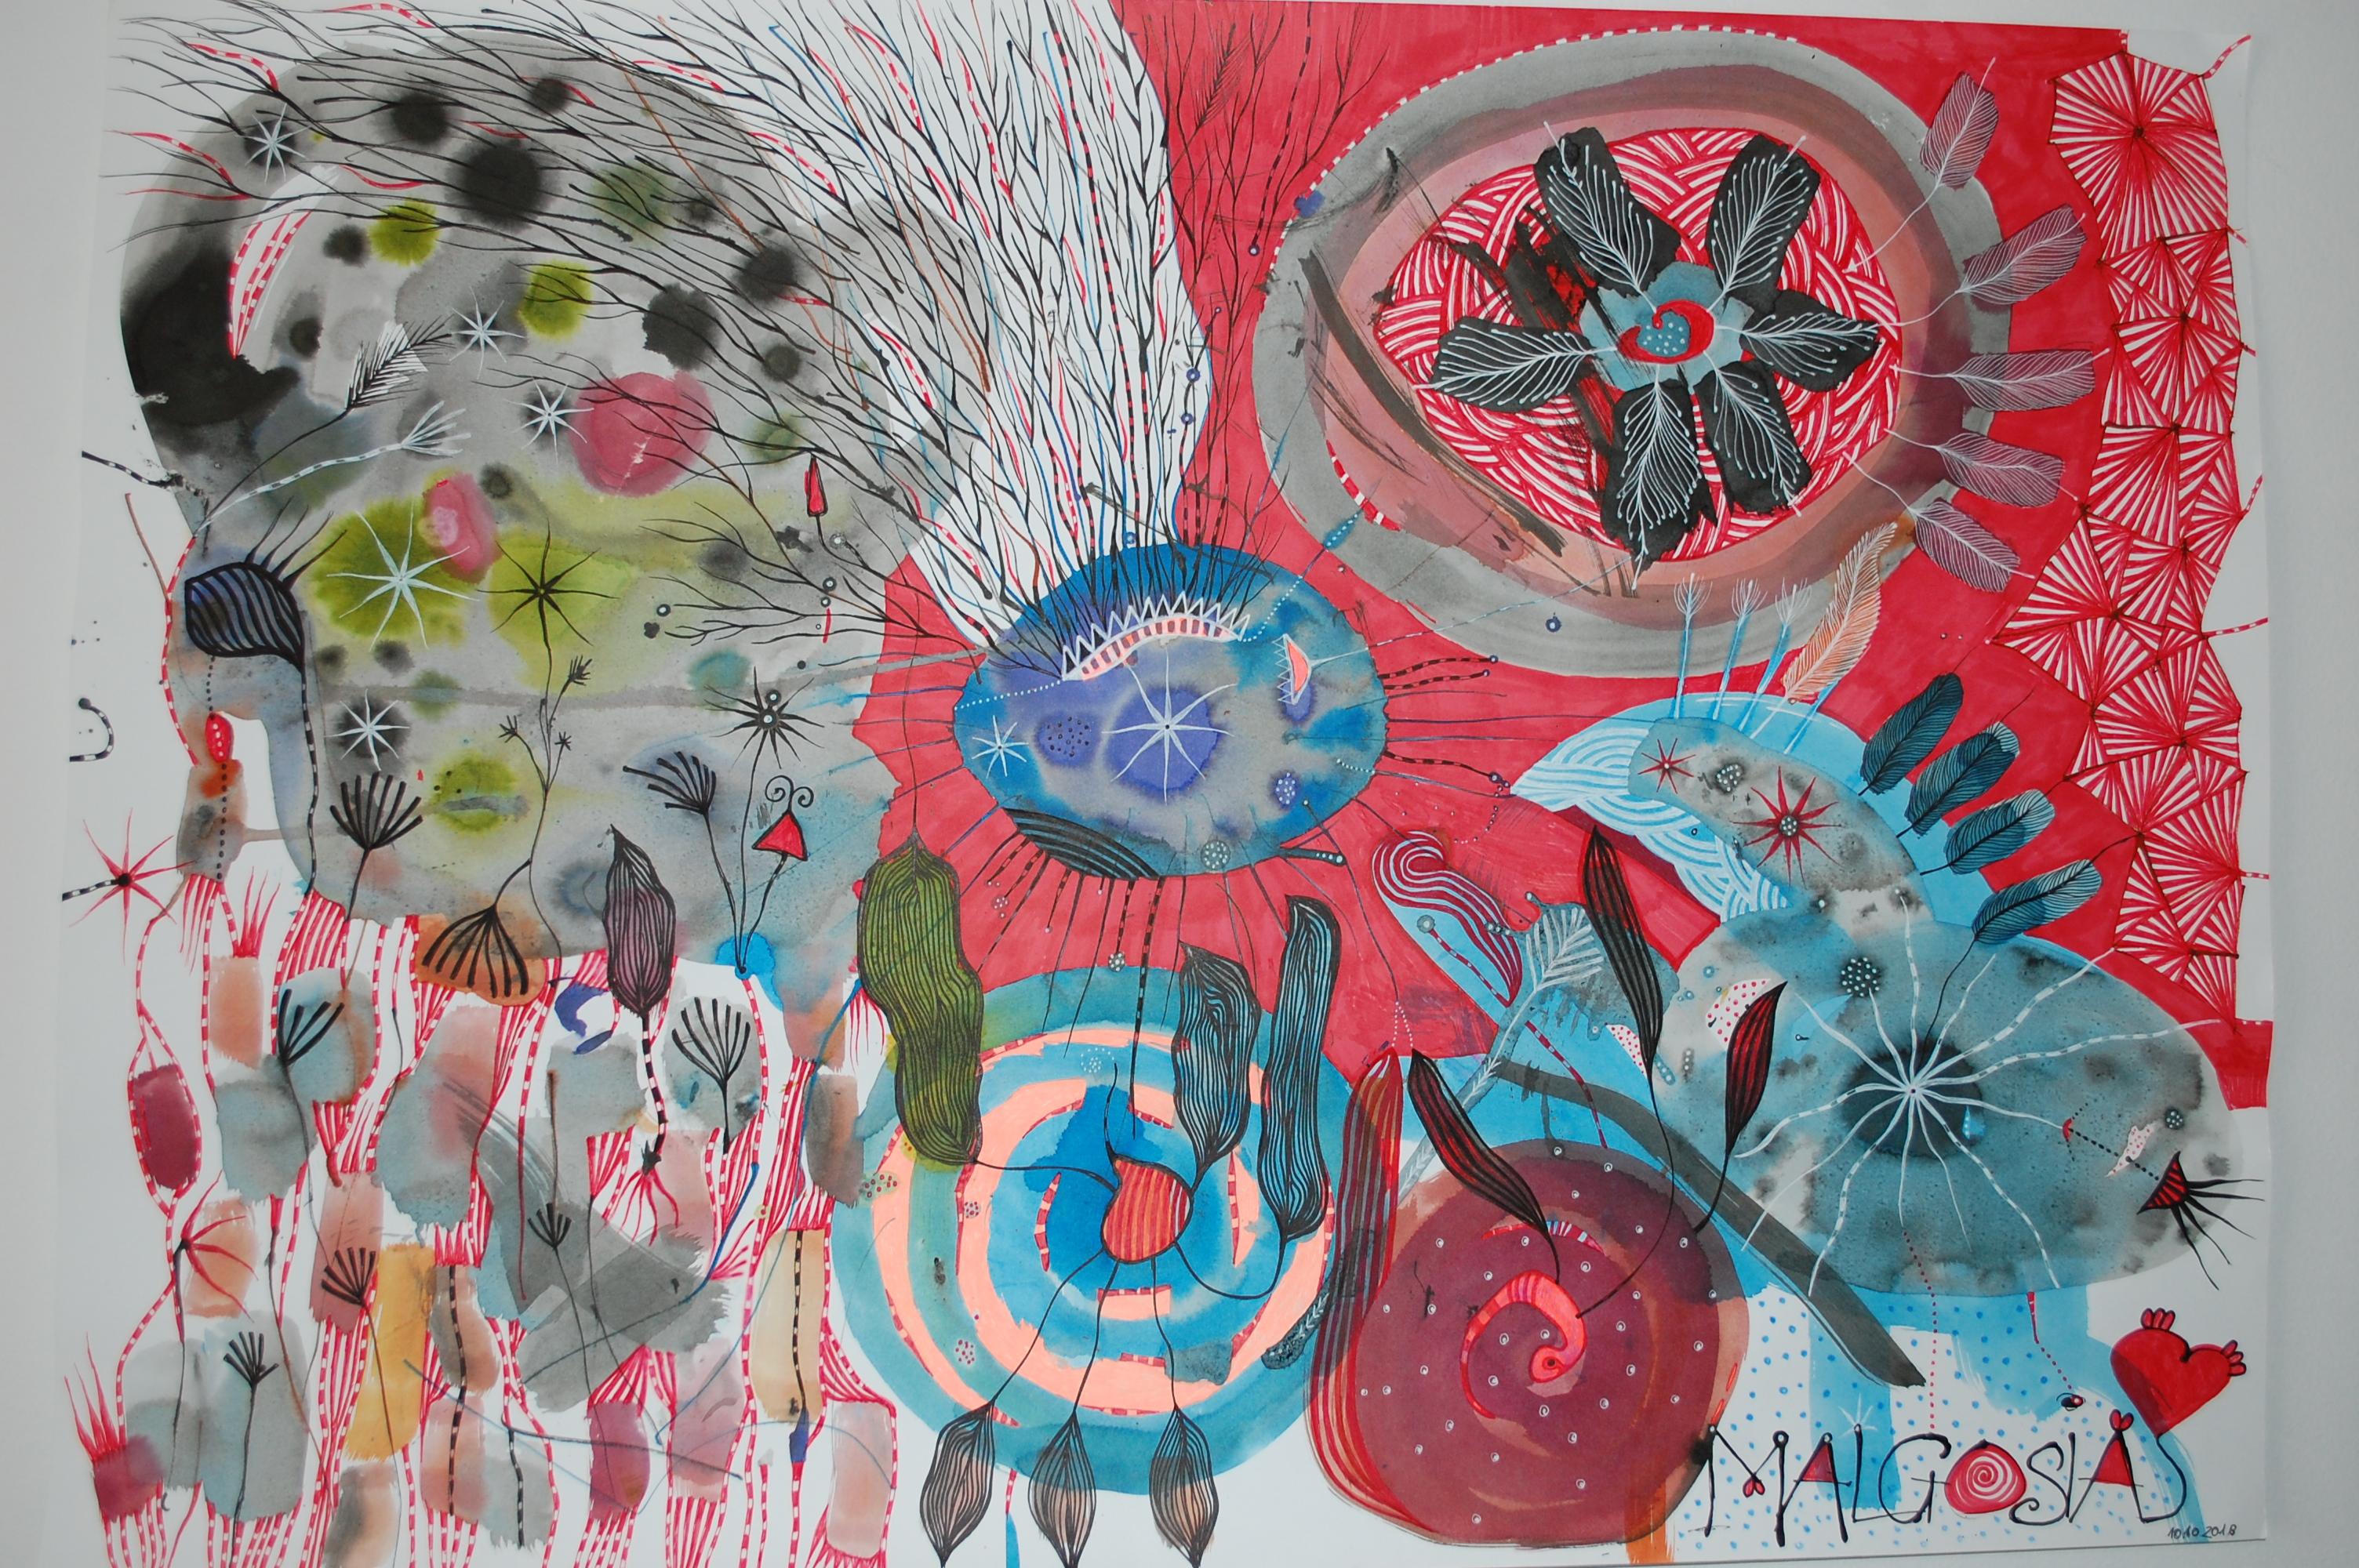 Malgosia Kiernozycka Abstract Painting - Crazy In Heaven Mixed Media On Paper